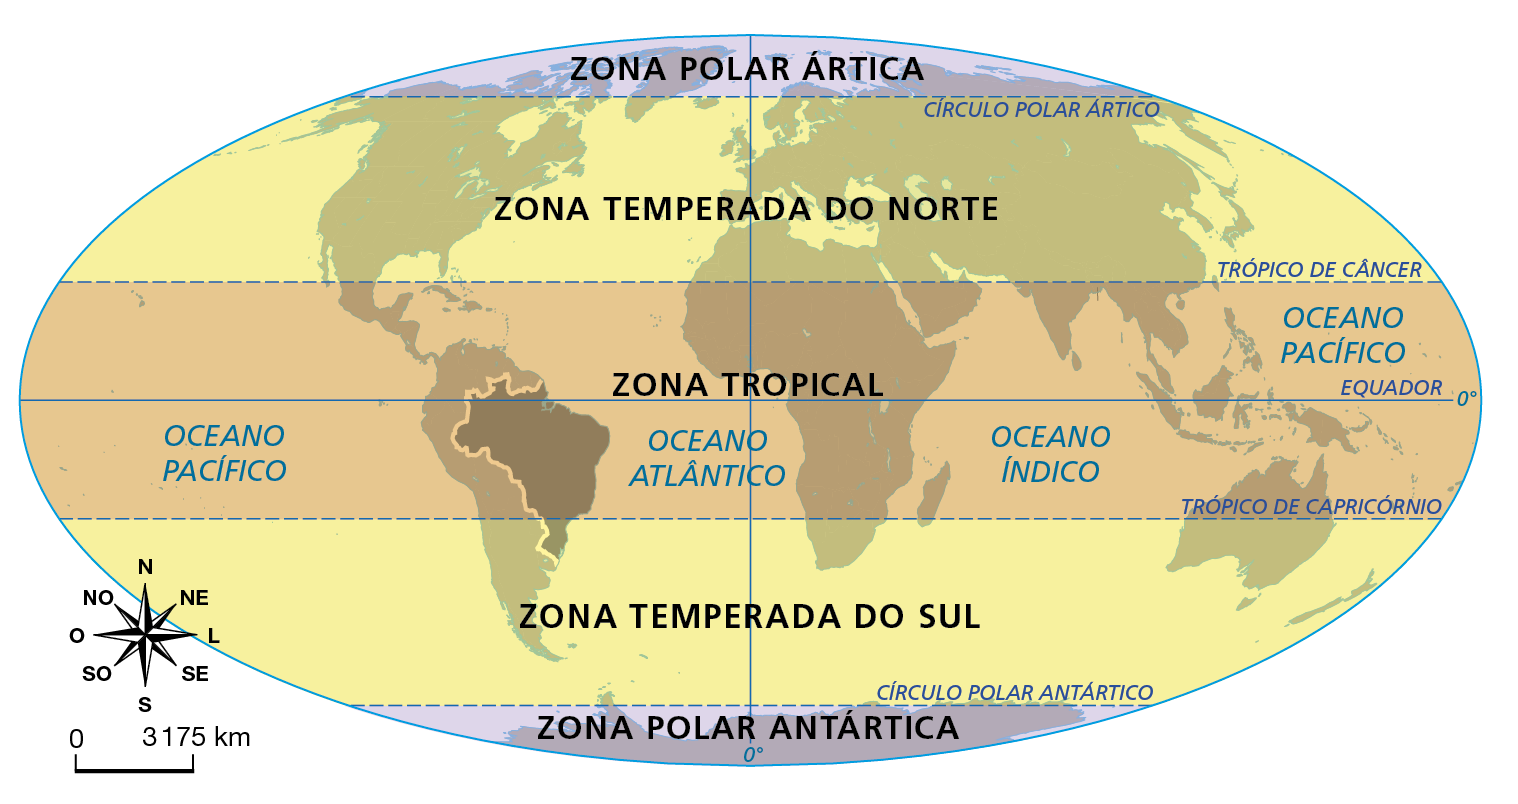 Mapa. Posição do Brasil em relação às zonas térmicas. Mapa-múndi representando todos os continentes, os principais paralelos e o Meridiano de Greenwich, com destaque para o Brasil. As zonas térmicas são evidenciadas por cores, e são segmentadas de acordo com principais paralelos. A divisão é feita da seguinte forma: Zona Polar Ártica: sinalizada pela cor roxa, é limitada pelo círculo polar ártico. Zona Temperada do Norte: sinalizada pela cor amarela, estende-se do Círculo Polar Ártico ao Trópico de Câncer. Zona Tropical: sinalizada pela cor laranja, estende-se do trópico de Câncer ao trópico de Capricórnio, dividida pela linha do Equador. Zona Temperada do Sul: sinalizada pela cor amarela, estende-se do trópico de Capricórnio ao Círculo Polar Antártico. Zona Polar Antártica: sinalizada pela cor roxa, é limitada pelo Círculo Polar Antártico. O território do Brasil está situado em sua maioria na zona tropical. Apenas a região Sul está ao sul do Trópico de Capricórnio e se situa na Zona Temperada do Sul. Na parte inferior esquerda, rosa dos ventos e escala 0 a 3.175 quilômetros.